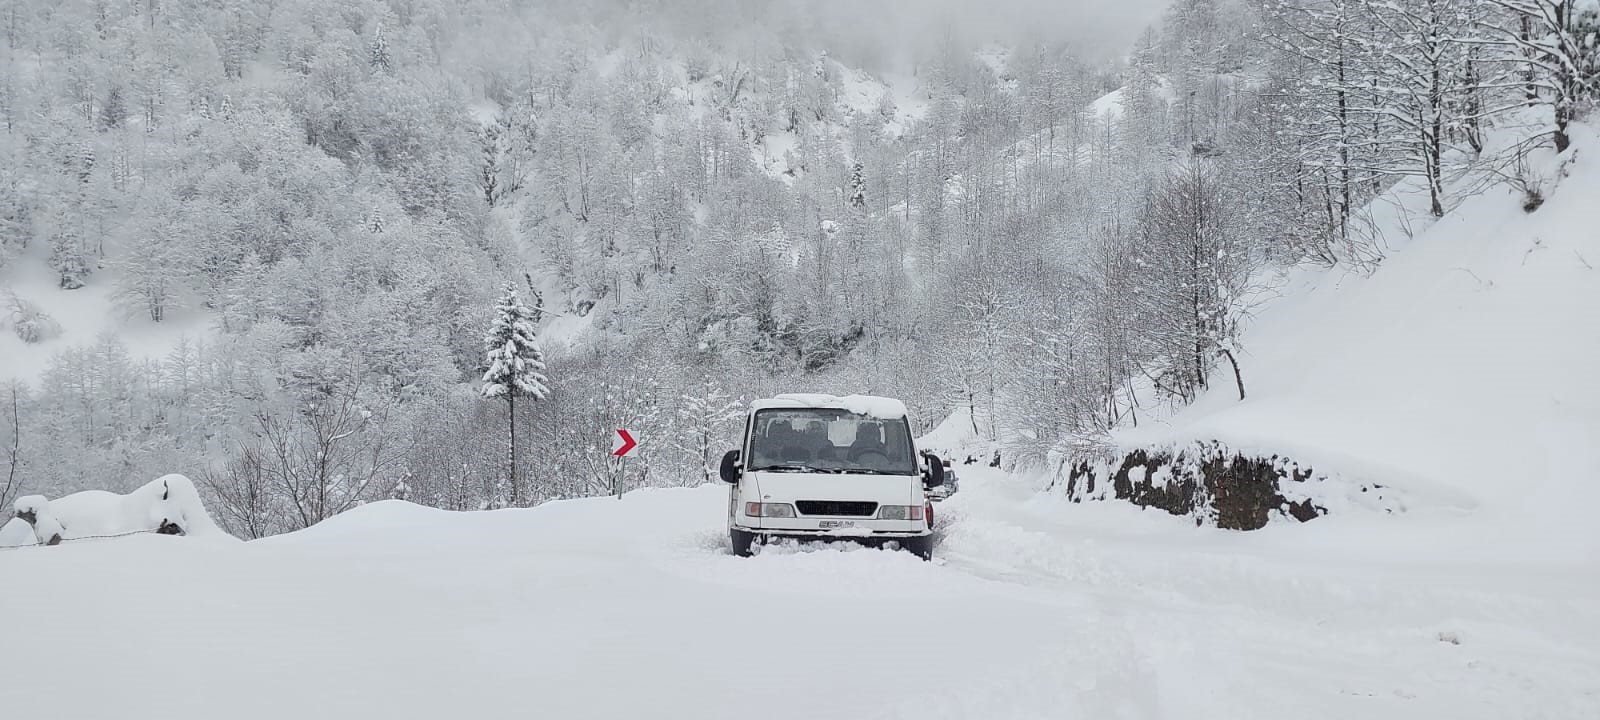 Gürcistan sınırında bulunan UNESCO’nun koruması altındaki Türkiye’nin ilk ve tek biyosfer rezerv alanı olan bin 900 rakımlı Camili bölgesinde yoğun kar yağışı nedeni ile yol açma çalışmaları sürüyor.
